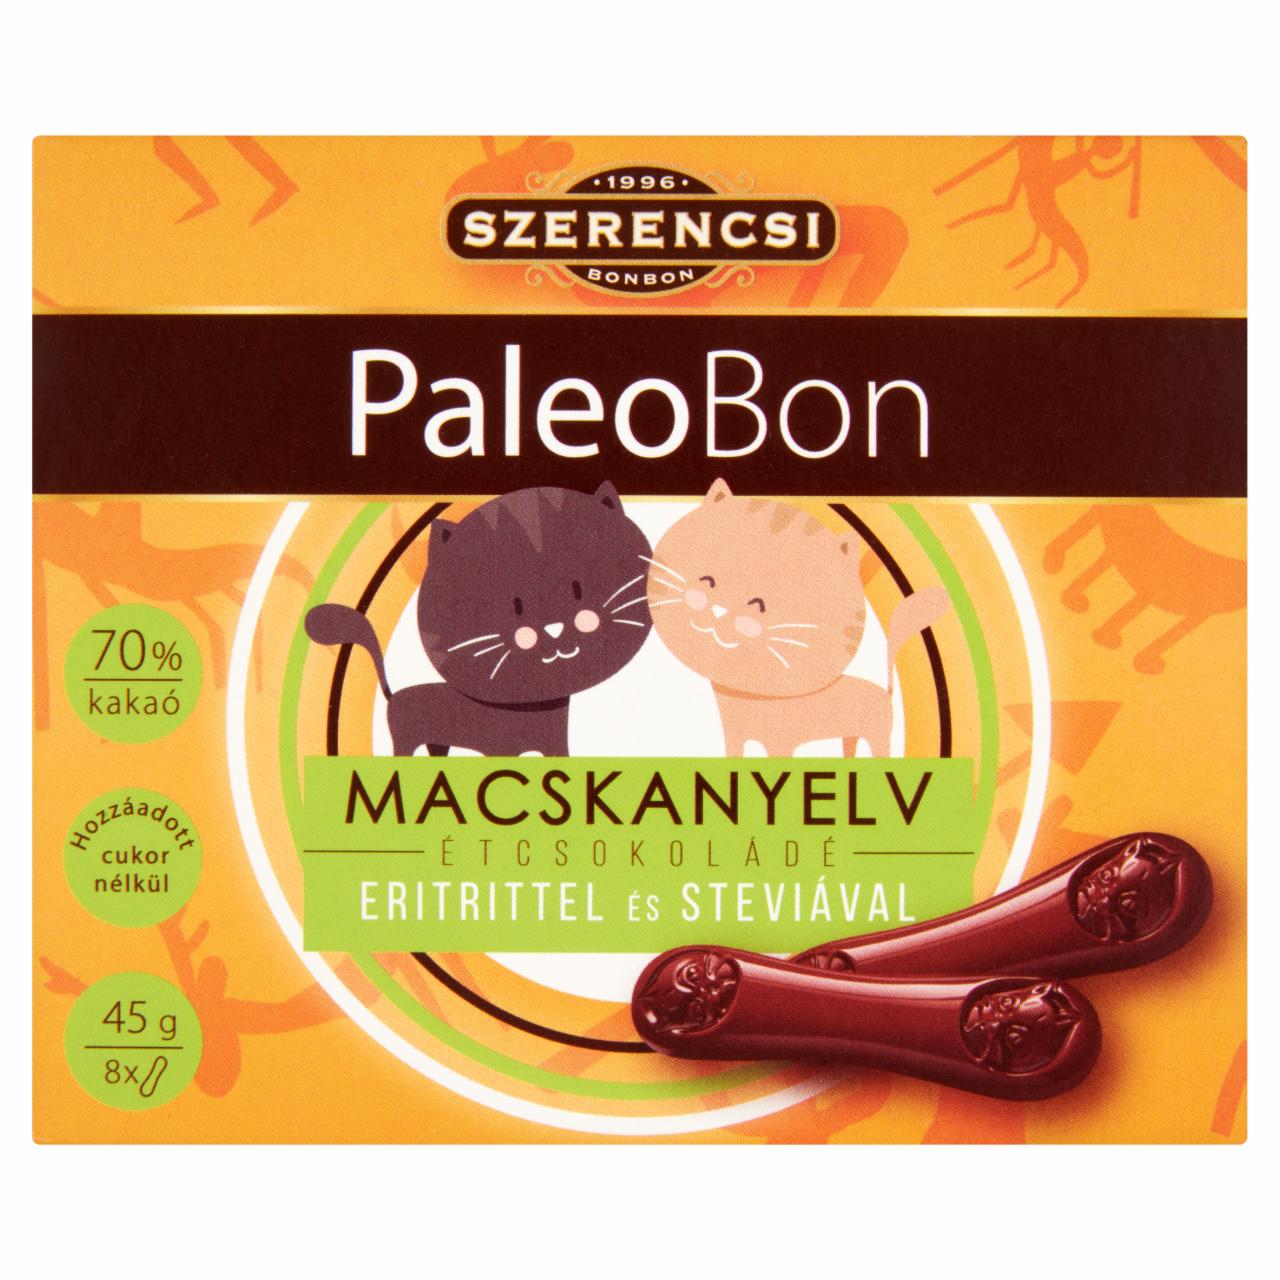 Képek - Szerencsi PaleoBon Macskanyelv étcsokoládé eritrittel és steviával 8 db 45 g